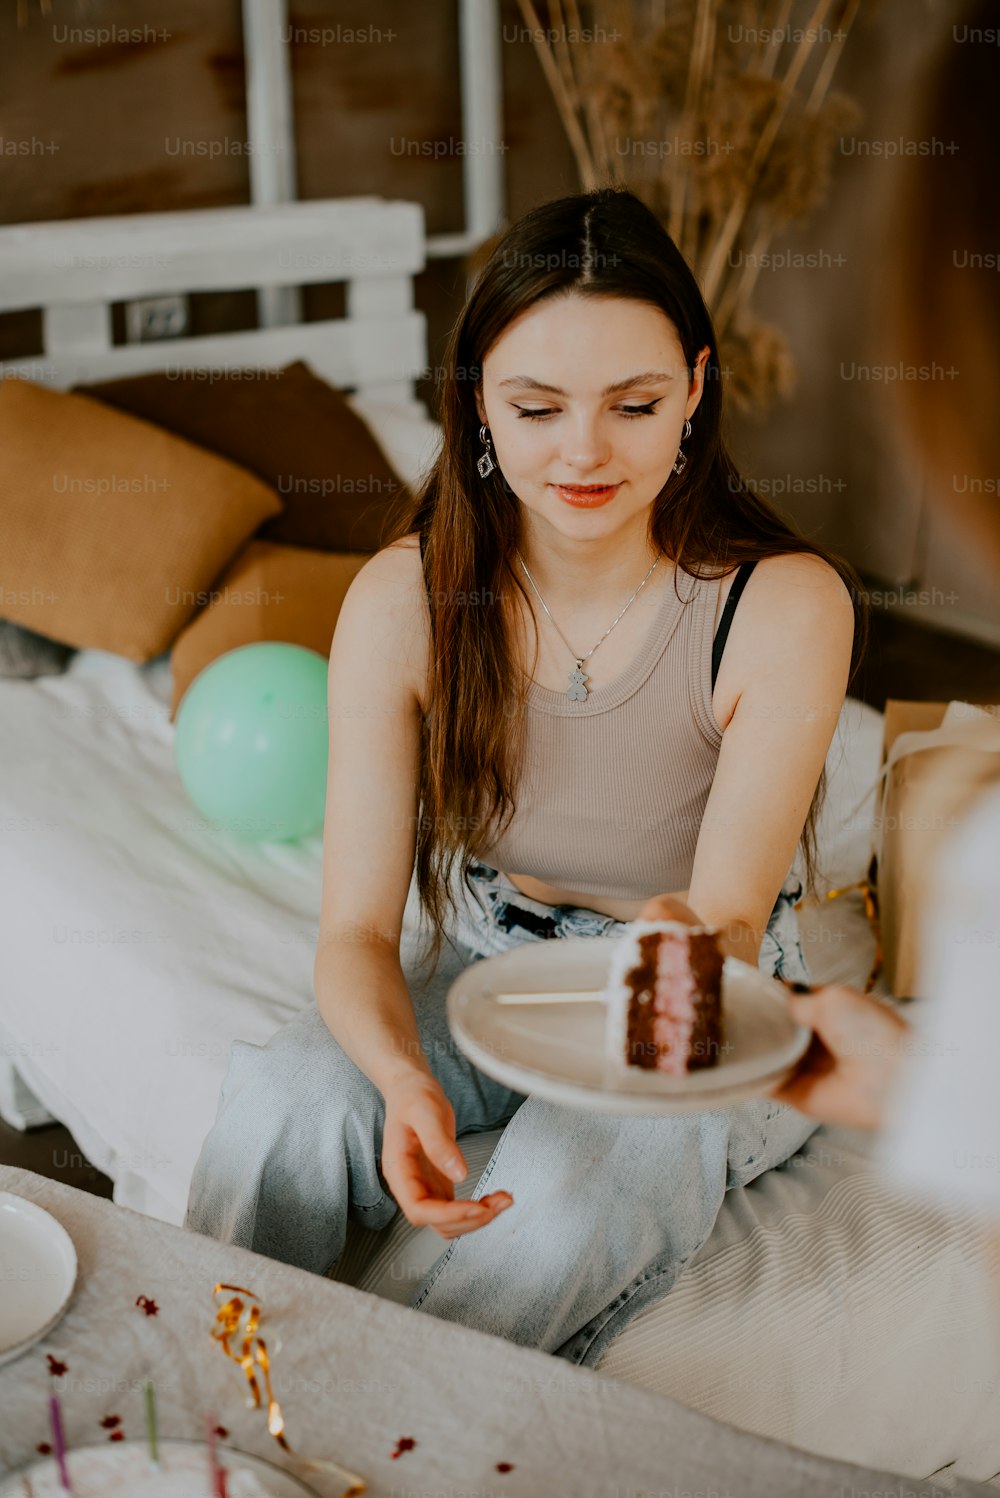 Eine Frau, die auf einem Bett sitzt und einen Teller mit einem Stück Kuchen darauf hält